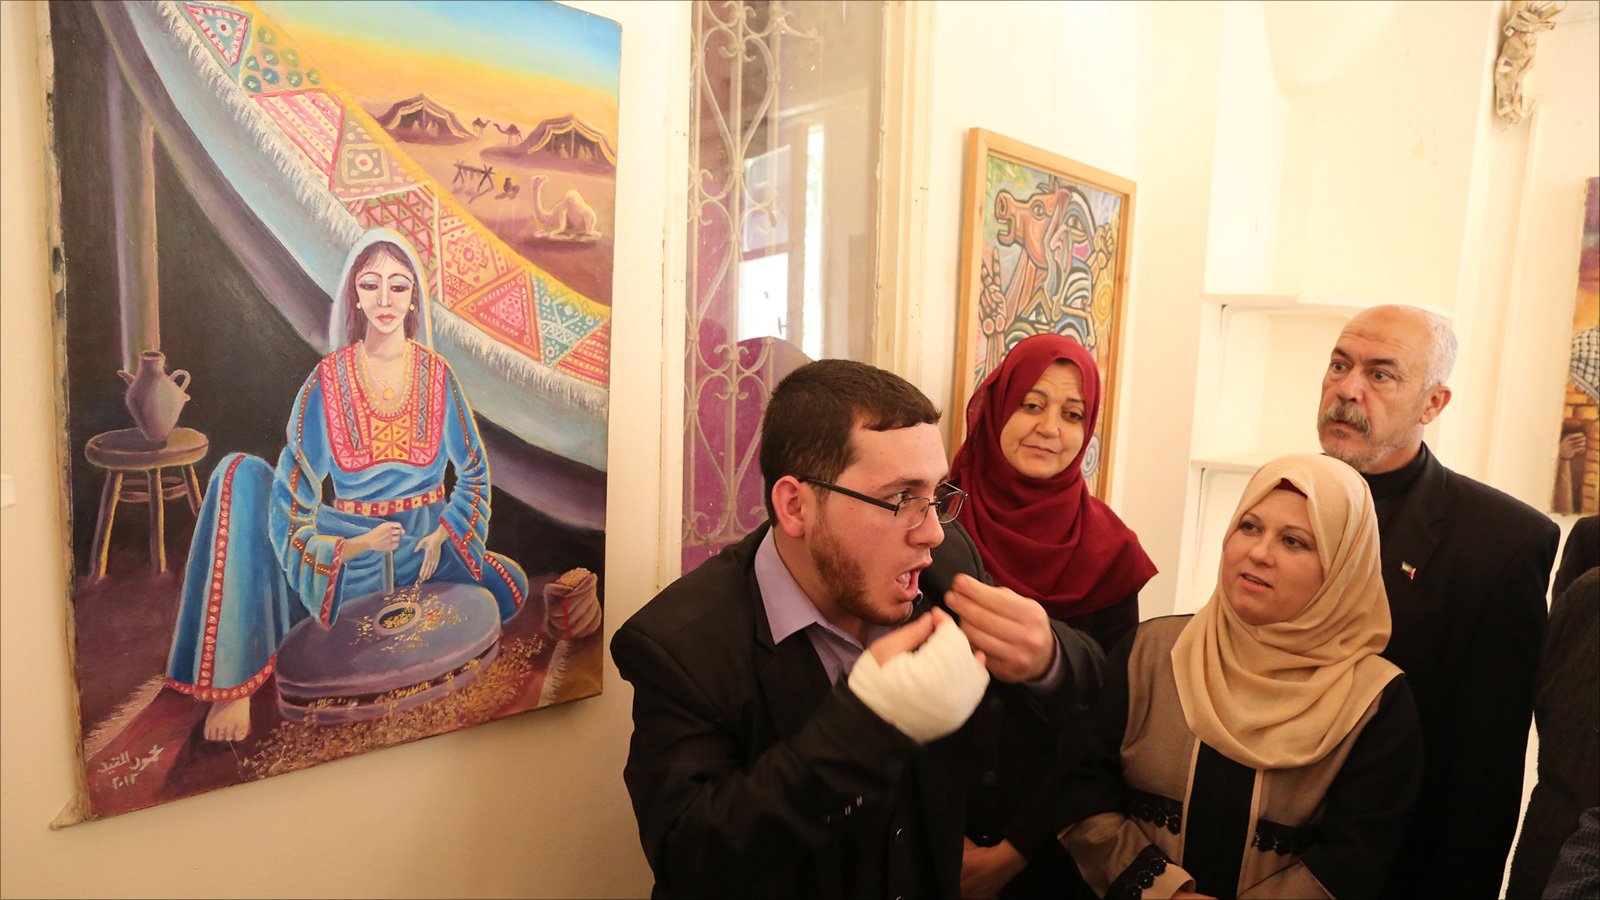 المقيد يشرح لوحة لسيدة فلسطينية تلبس زيا تراثيا فلسطينيا (الجزيرة)